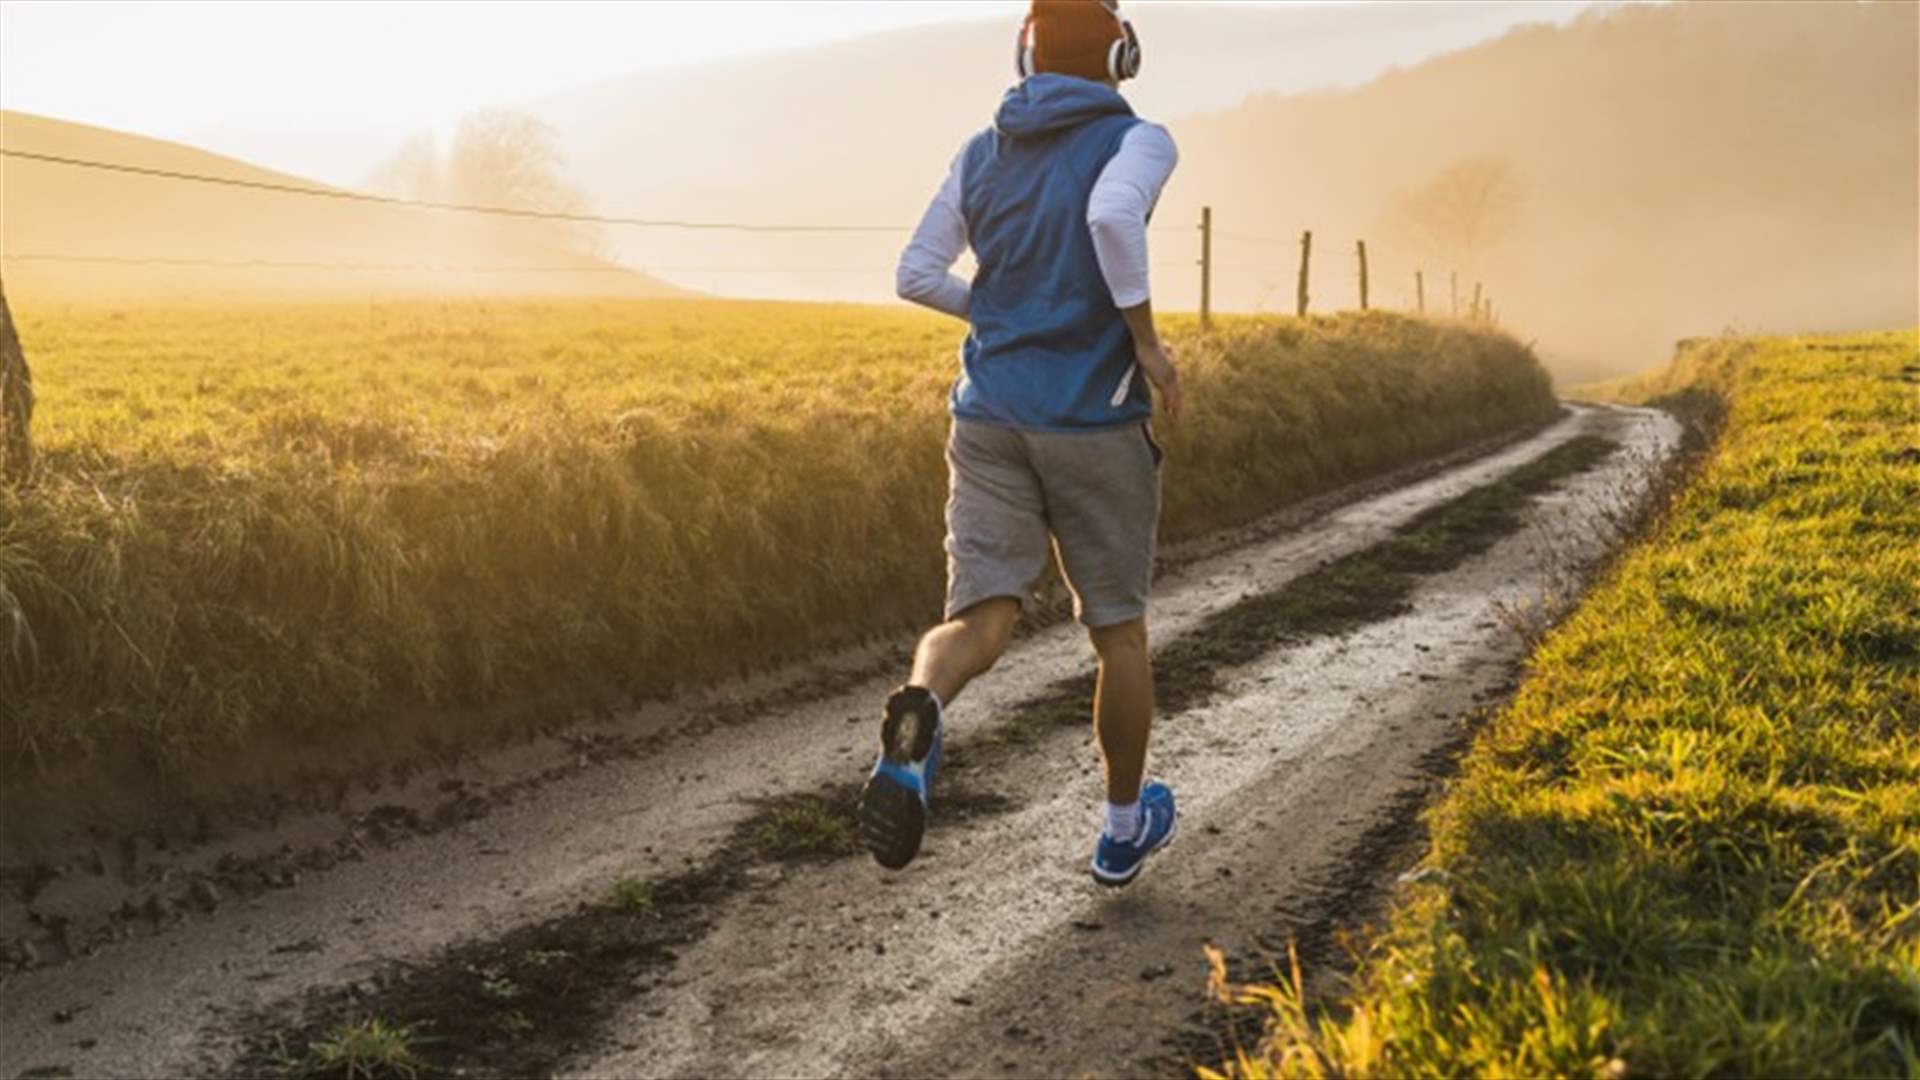 لماذا نشعر بصفاء الذهن بعد الركض؟